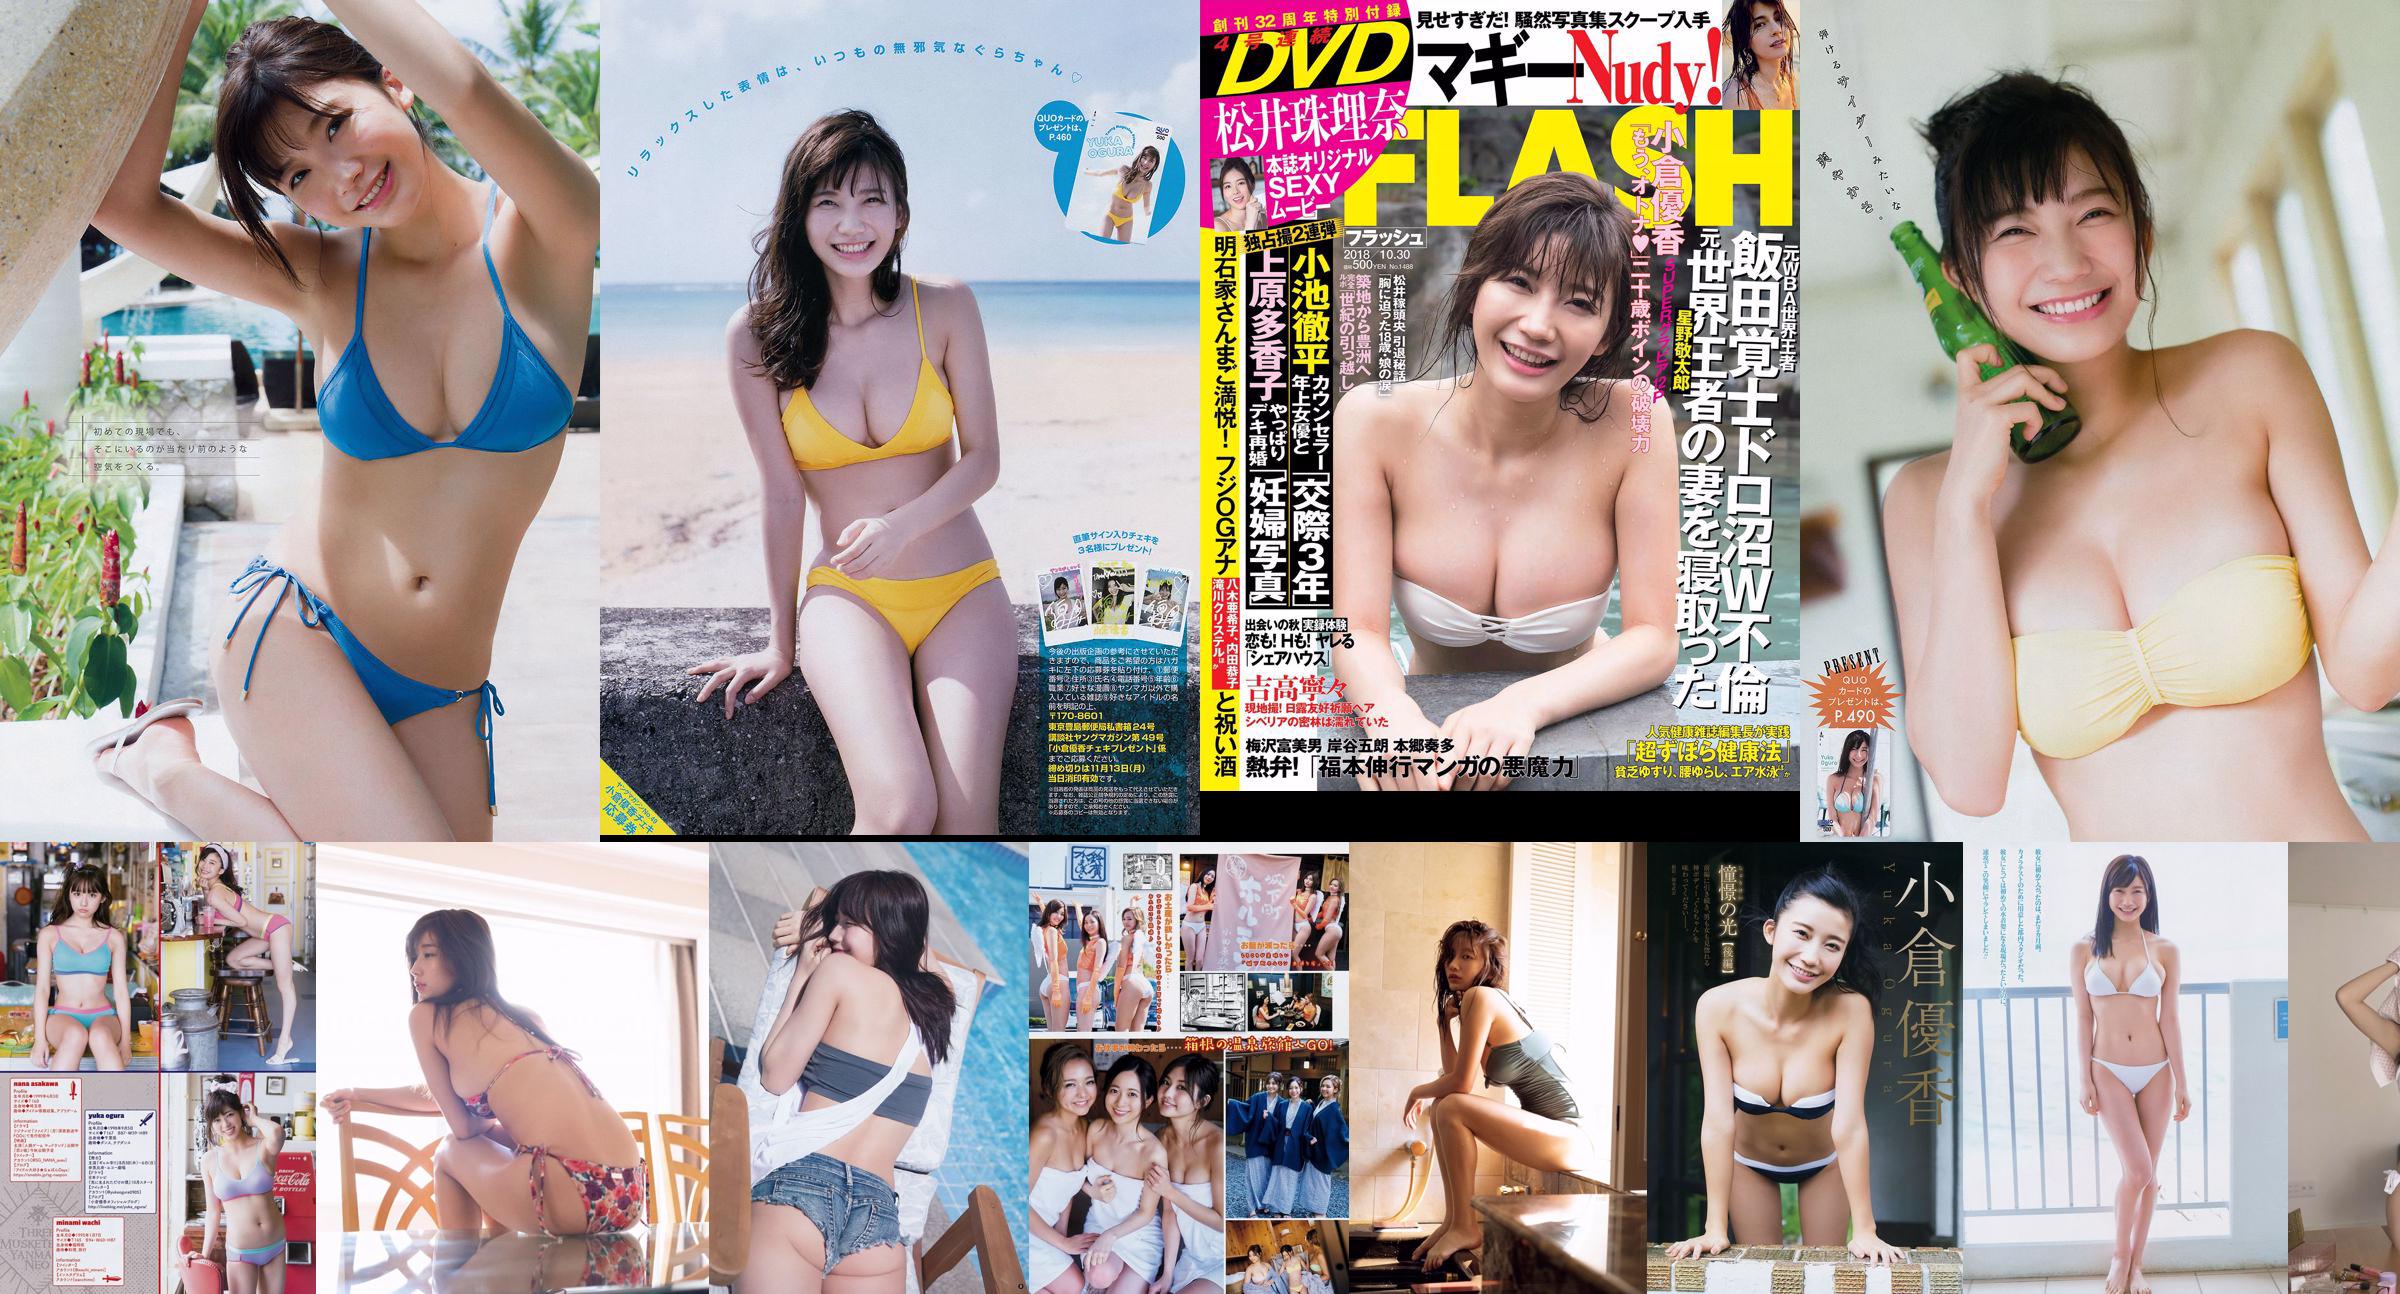 [Młody magazyn] Yuka Ogura RaMu 2018 nr 13 Zdjęcie No.708dd1 Strona 1